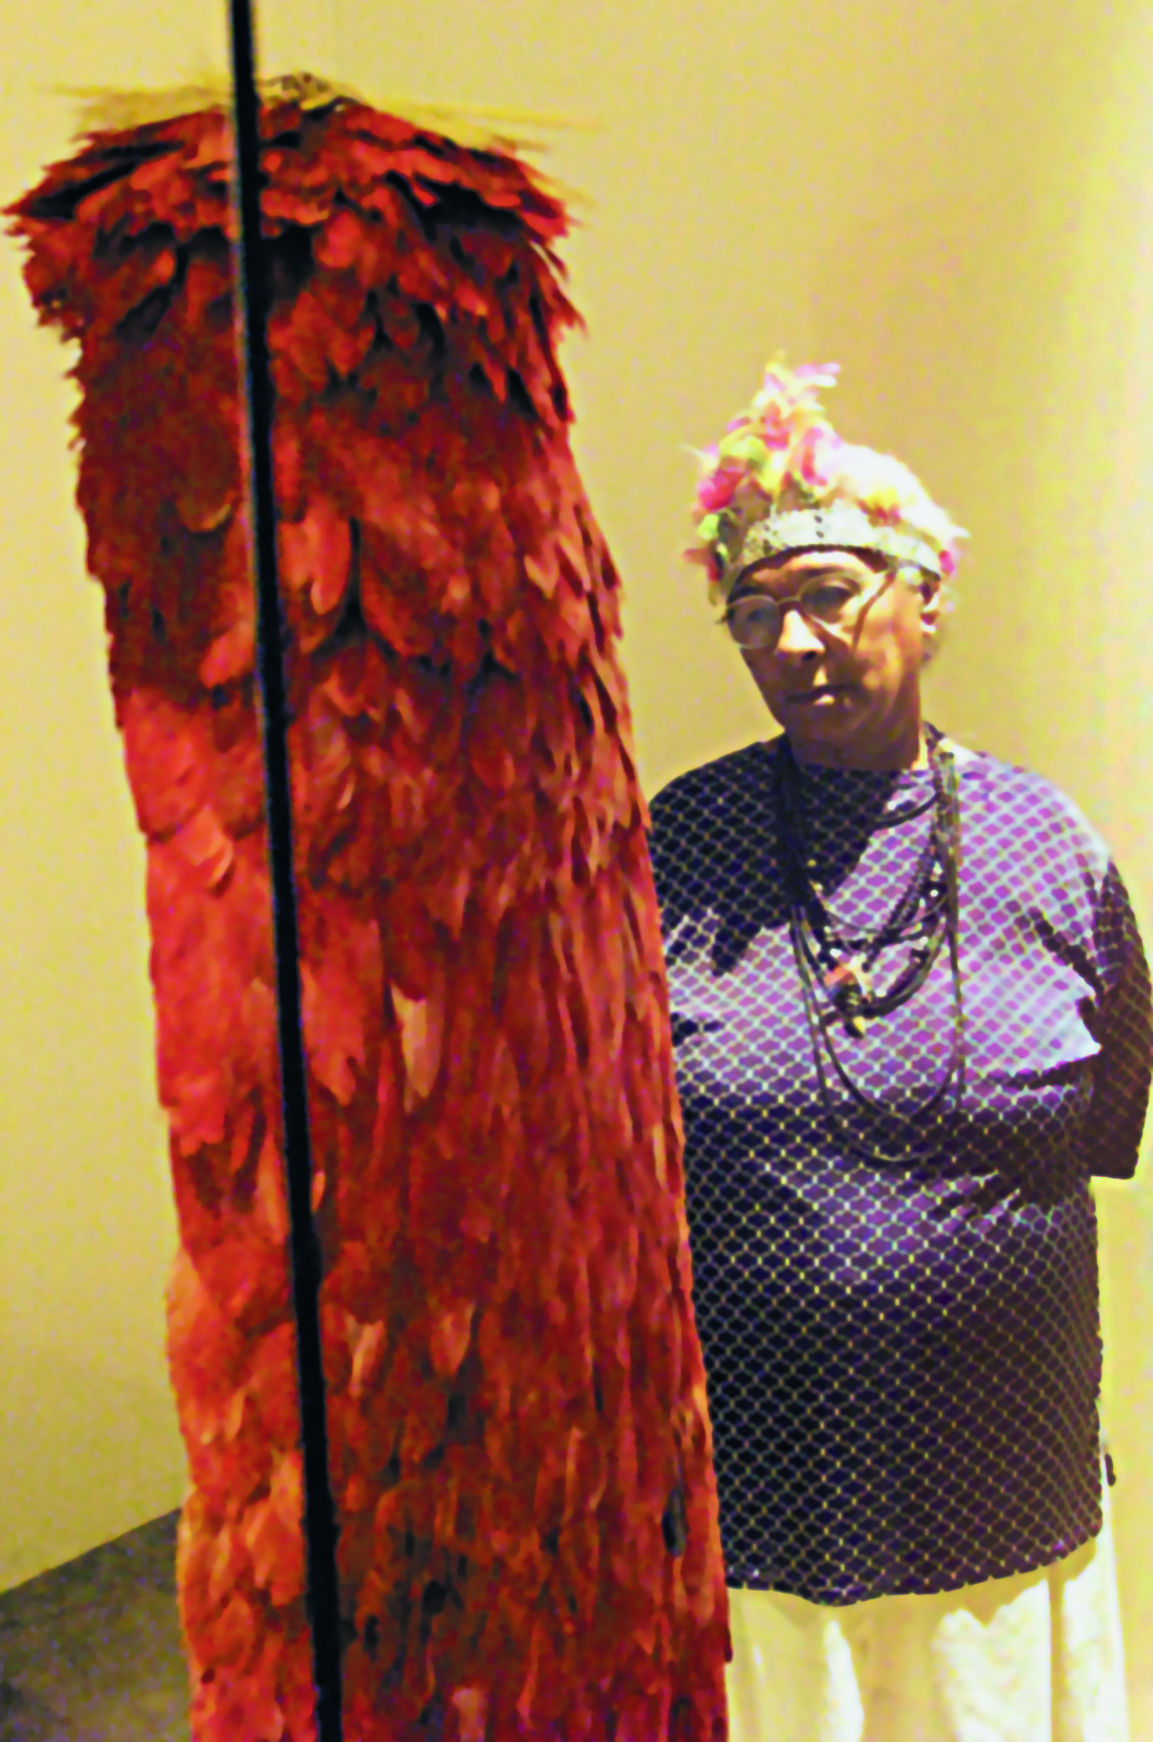 Fotografia. Uma mulher indígena de cabelos grisalhos, curtos e lisos, vestindo uma camisa azul e saia branca, um cocar com penas e colares ao redor do pescoço, observa um manto comprido coberto de penas vermelhas.